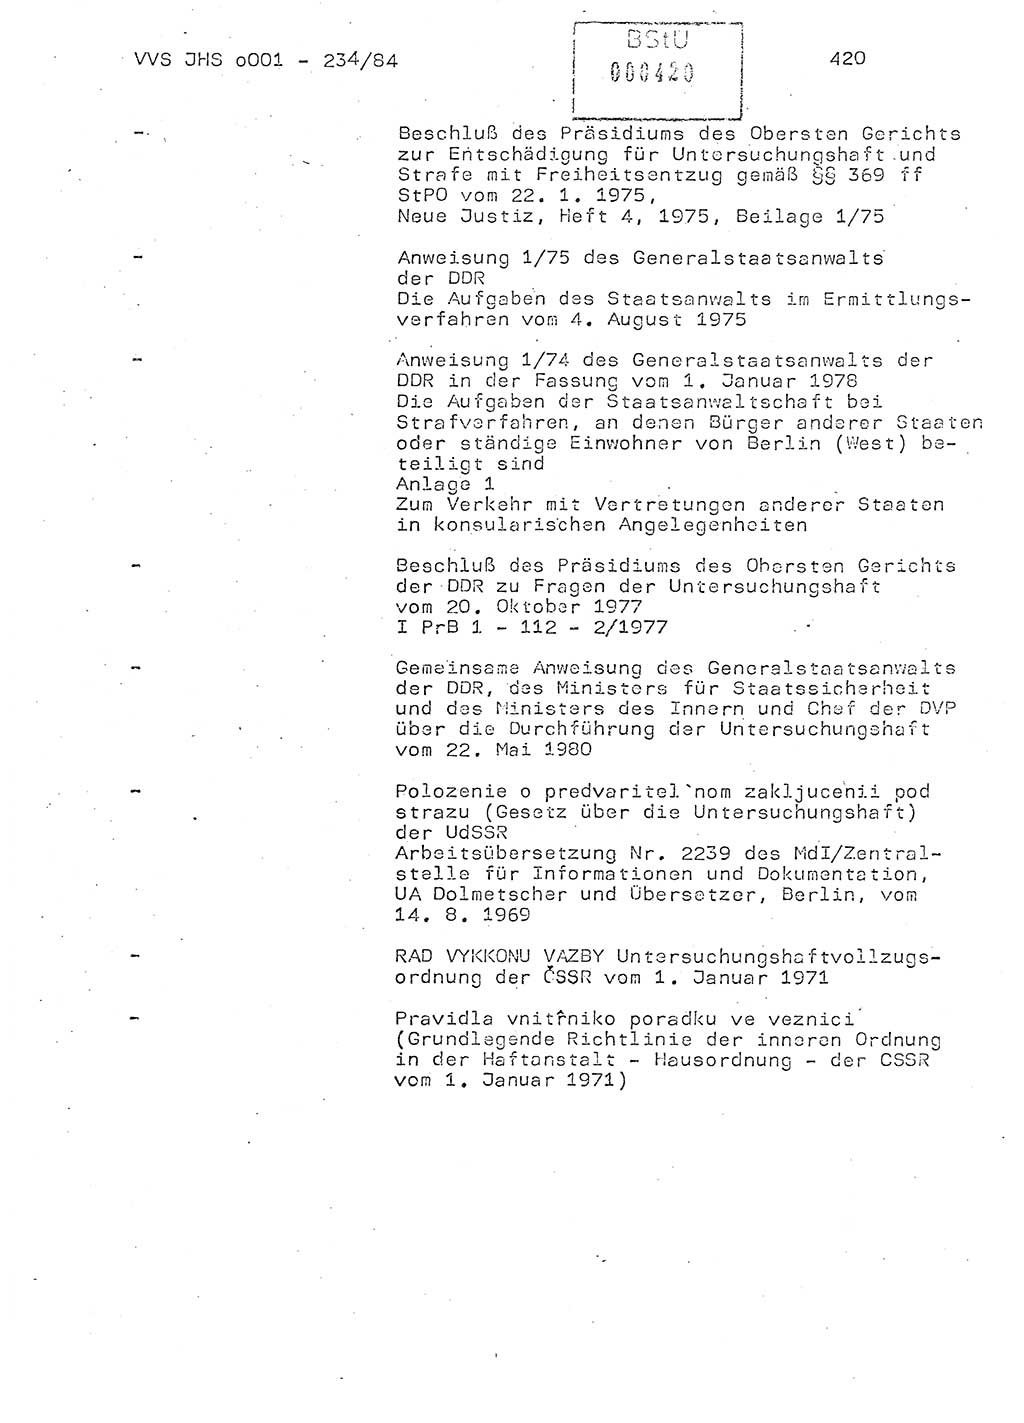 Dissertation Oberst Siegfried Rataizick (Abt. ⅩⅣ), Oberstleutnant Volkmar Heinz (Abt. ⅩⅣ), Oberstleutnant Werner Stein (HA Ⅸ), Hauptmann Heinz Conrad (JHS), Ministerium für Staatssicherheit (MfS) [Deutsche Demokratische Republik (DDR)], Juristische Hochschule (JHS), Vertrauliche Verschlußsache (VVS) o001-234/84, Potsdam 1984, Seite 420 (Diss. MfS DDR JHS VVS o001-234/84 1984, S. 420)